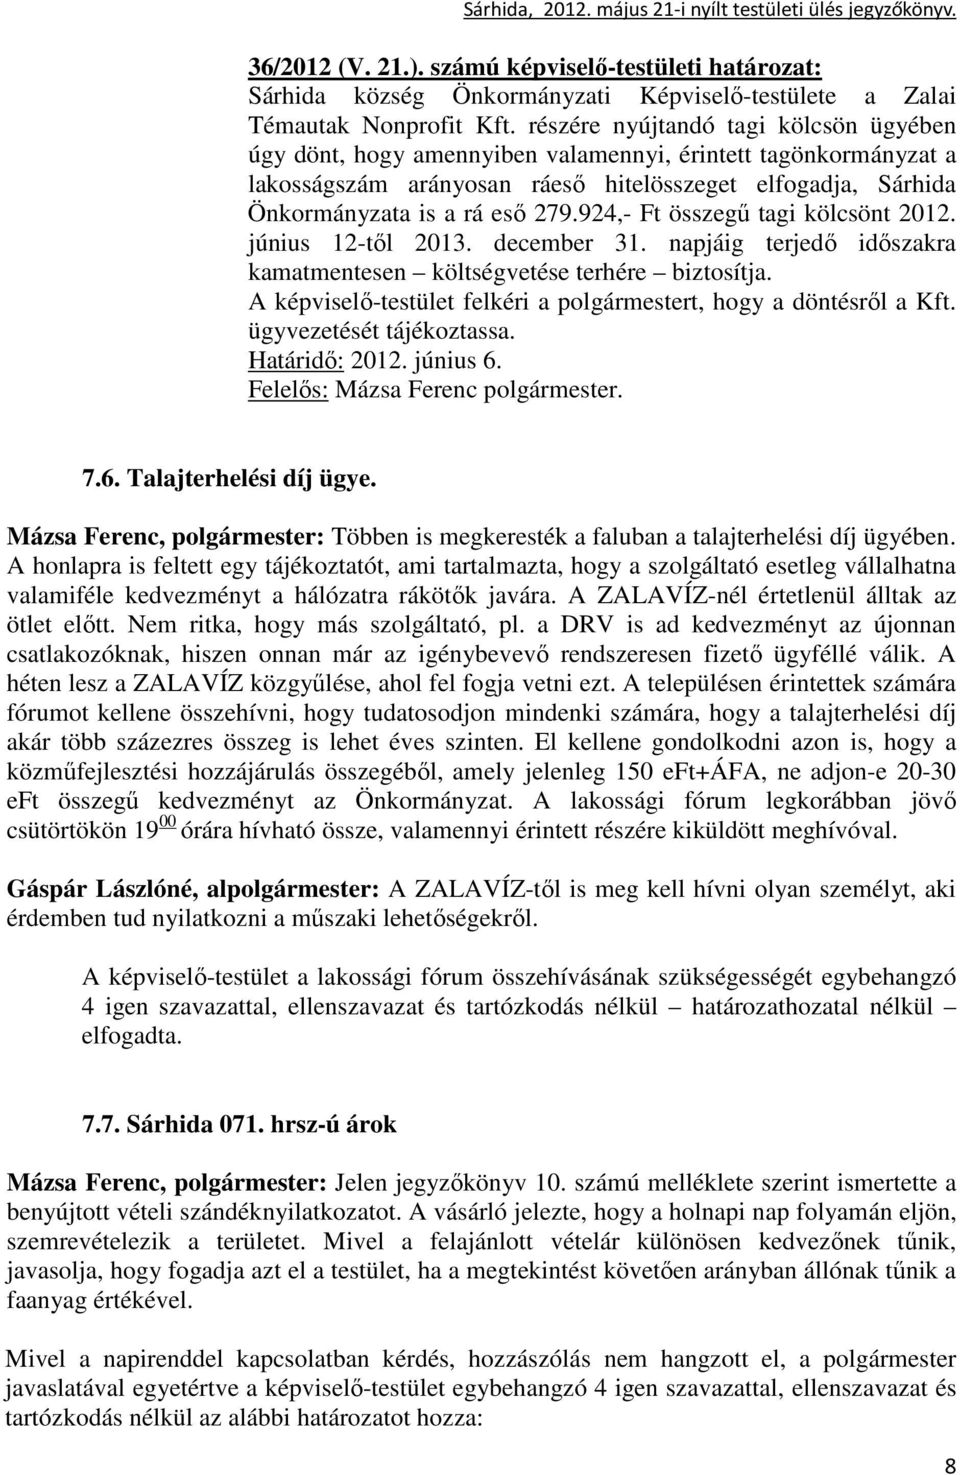 924,- Ft összegő tagi kölcsönt 2012. június 12-tıl 2013. december 31. napjáig terjedı idıszakra kamatmentesen költségvetése terhére biztosítja.